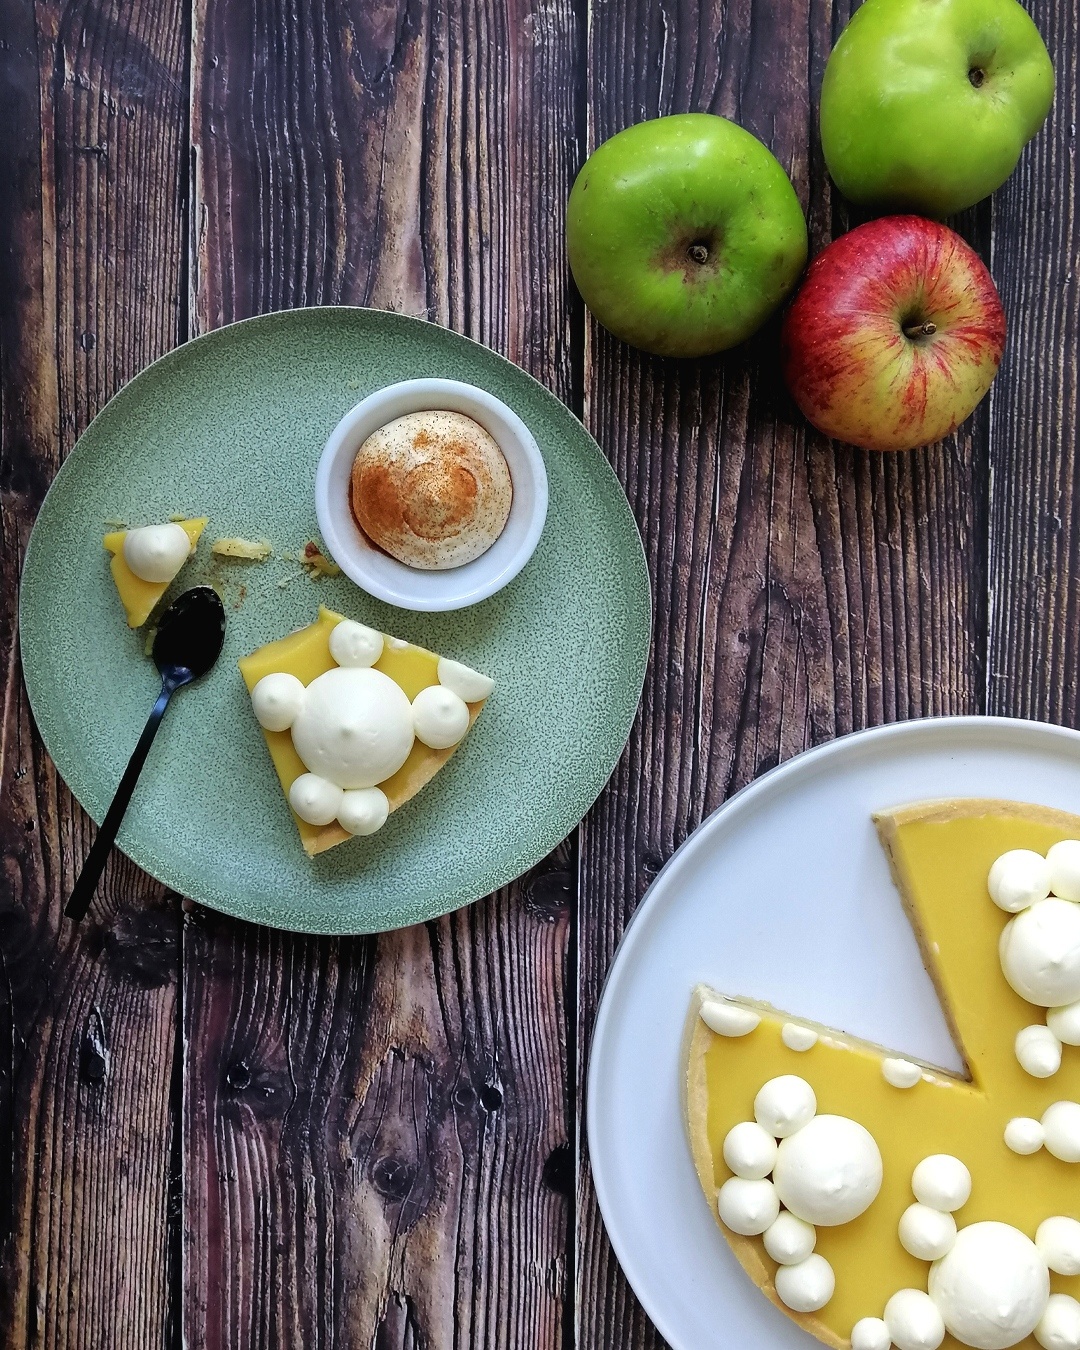 Apple curd tart with crème fraîche whipped ganache - The Italian baker